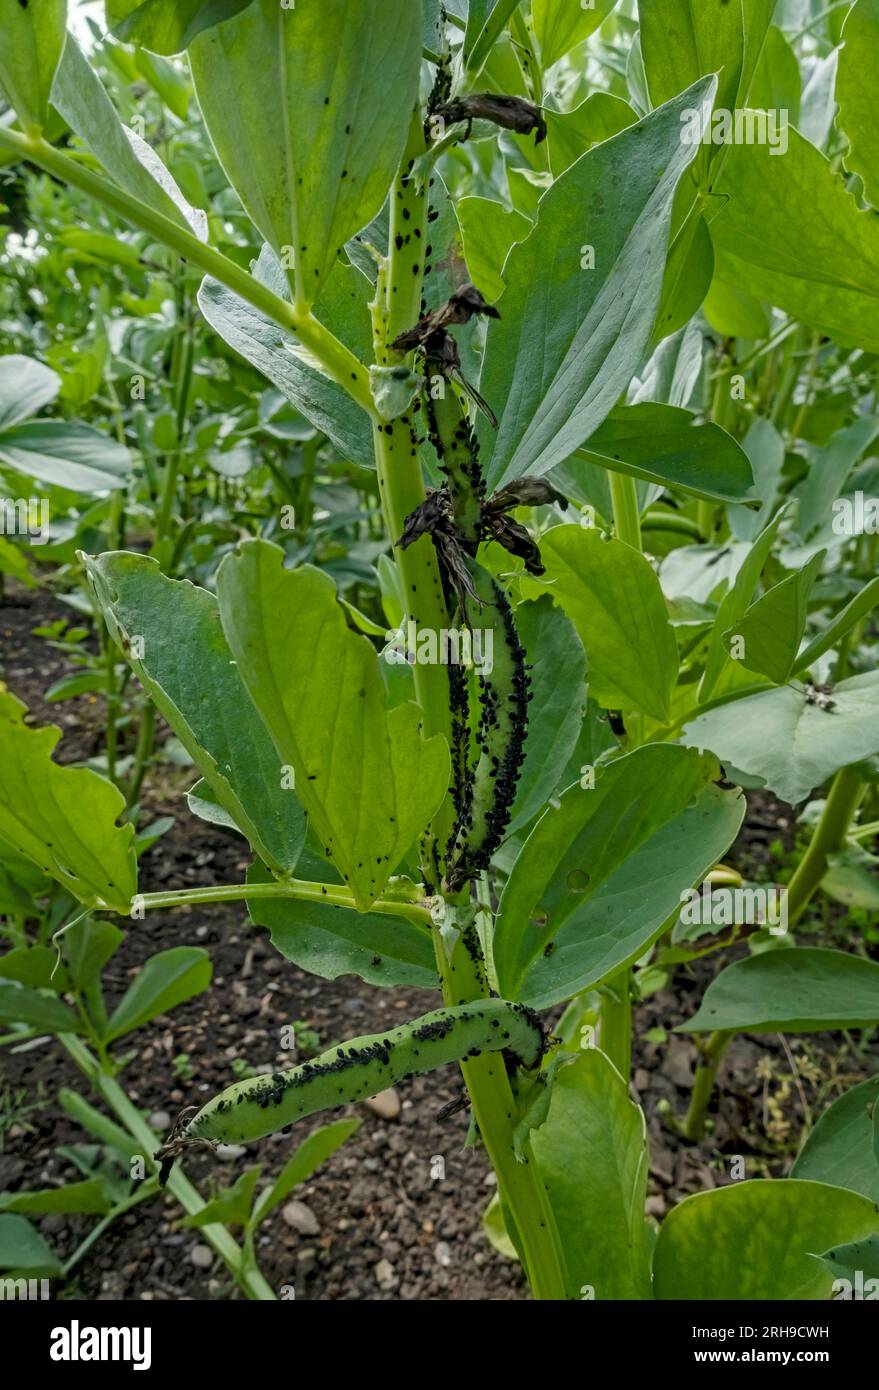 Gros plan de plantes de haricots larges poussant dans le jardin potager couvert de pucerons de mouche noire puceron en été Angleterre Royaume-Uni Royaume-Uni GB Grande-Bretagne Banque D'Images